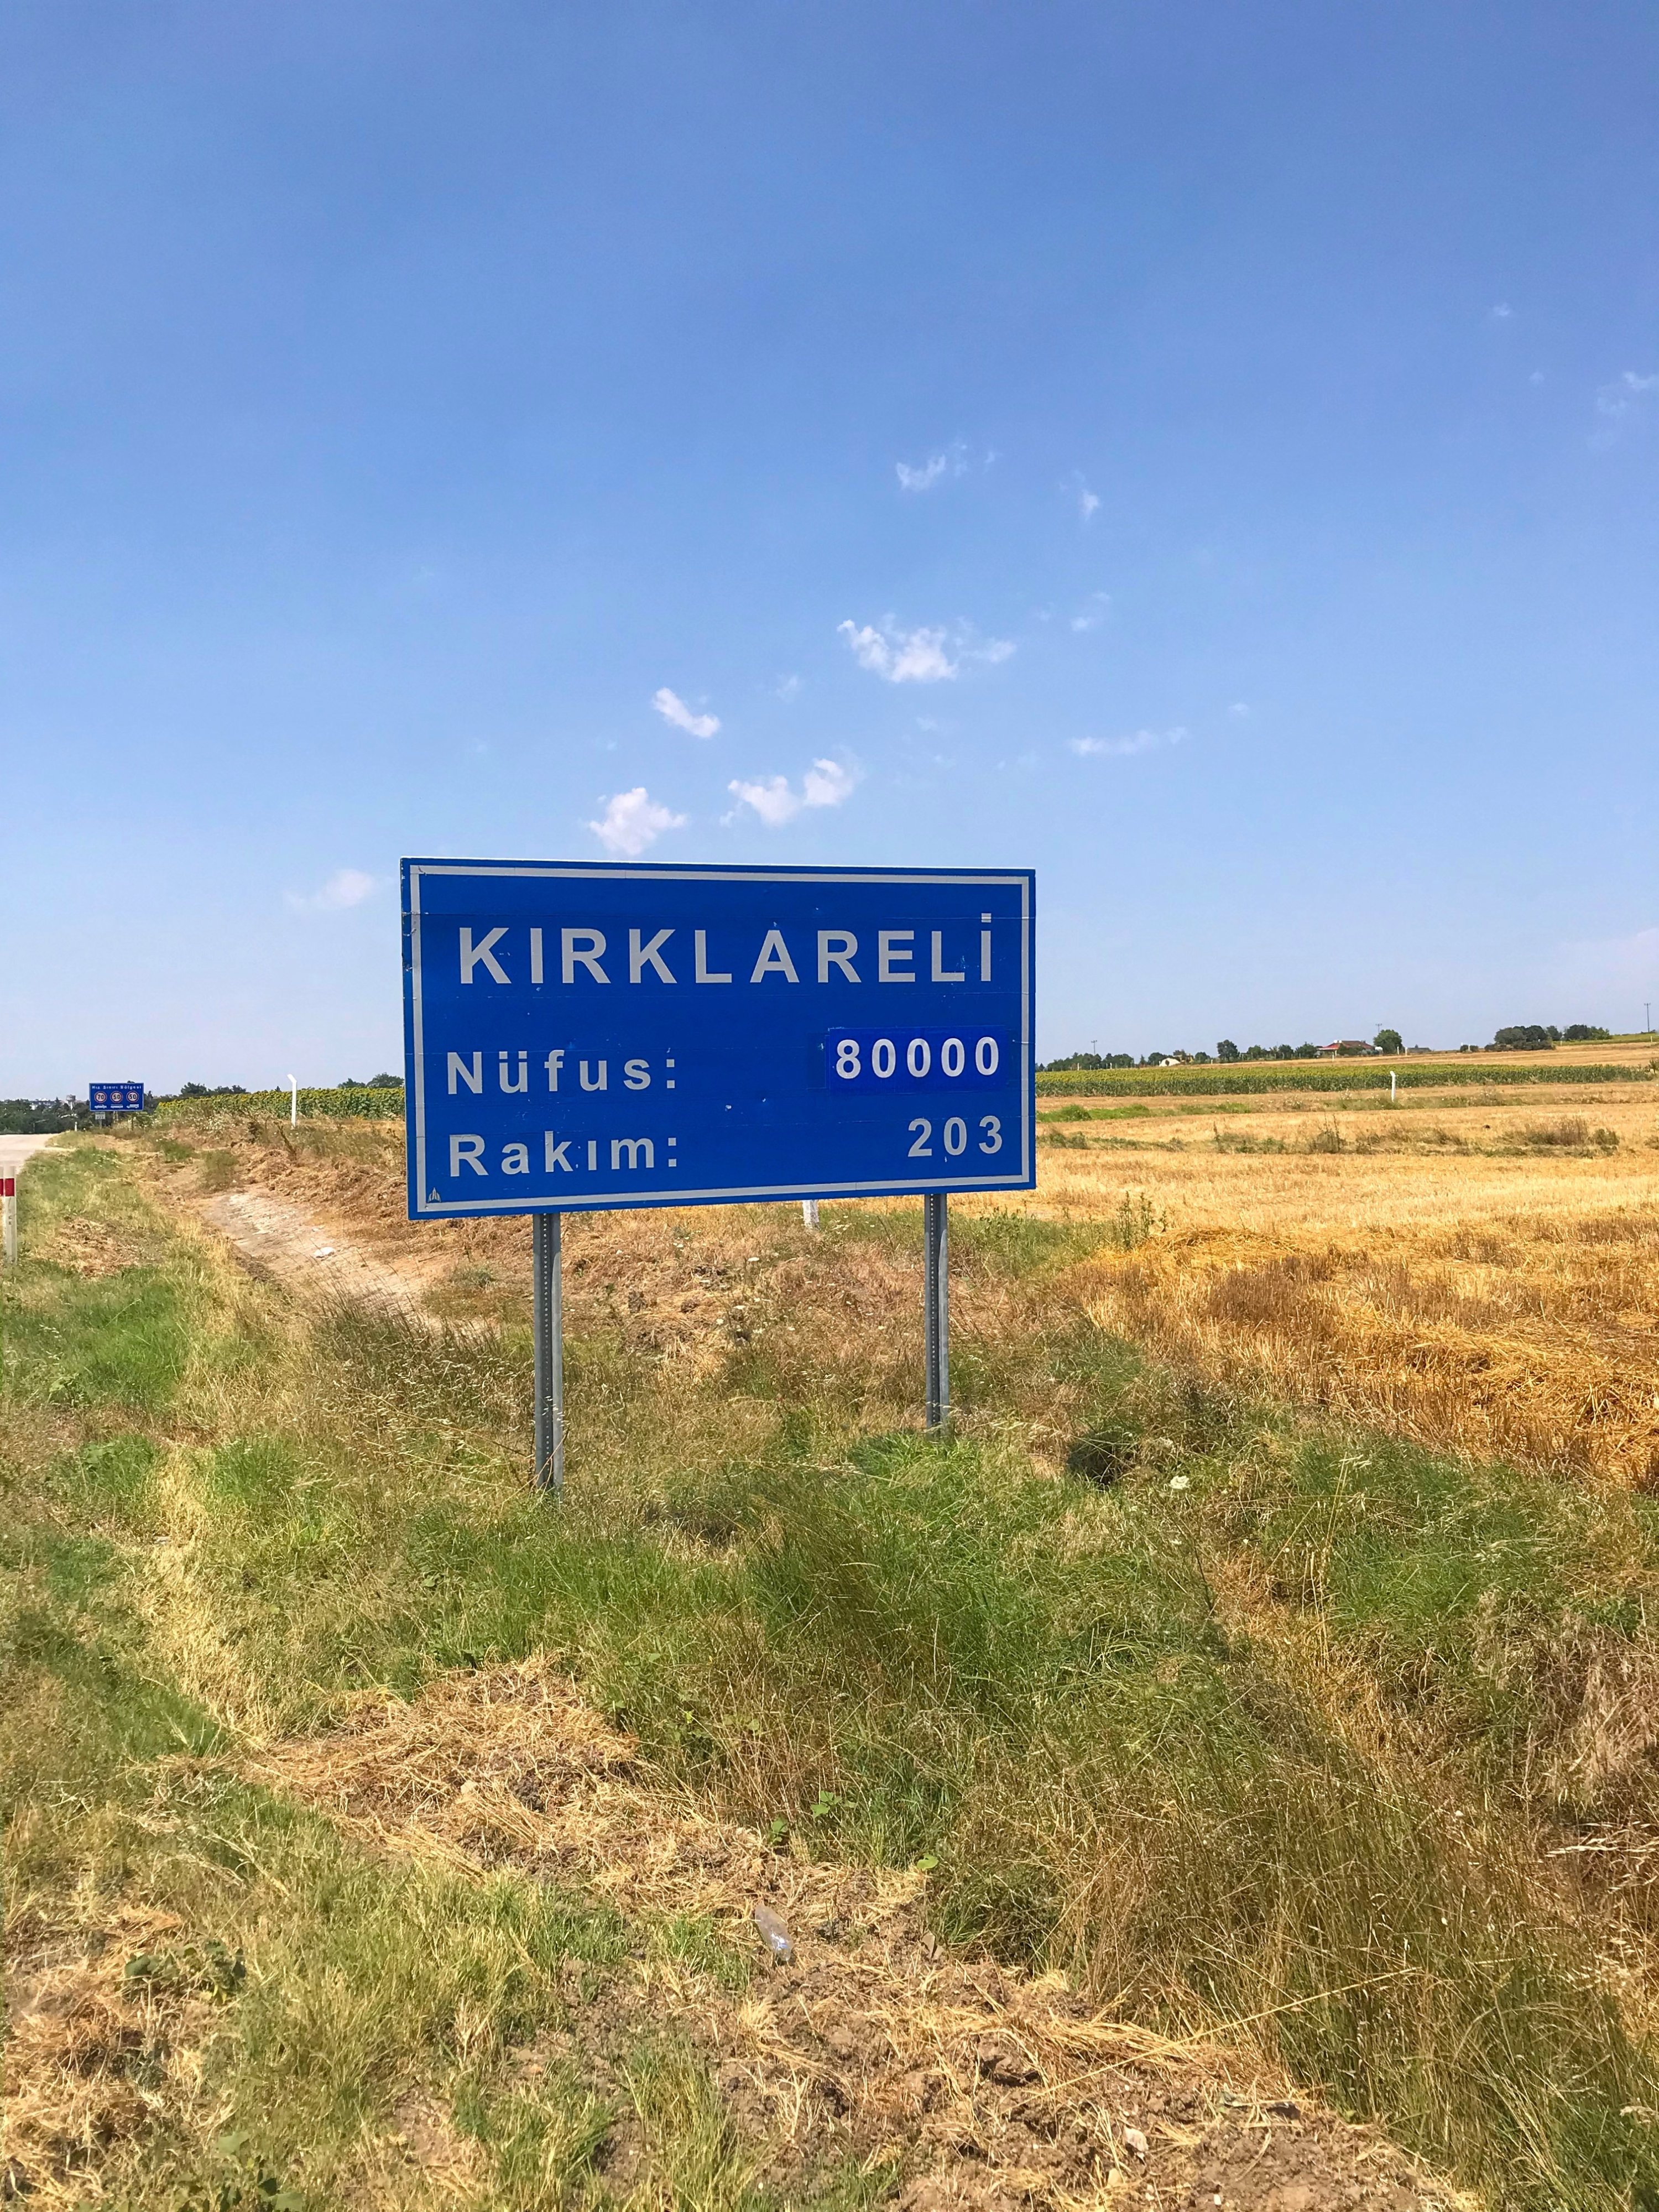 The sign for Kırklareli, Türkiye. (Photo by Özge Şengelen)